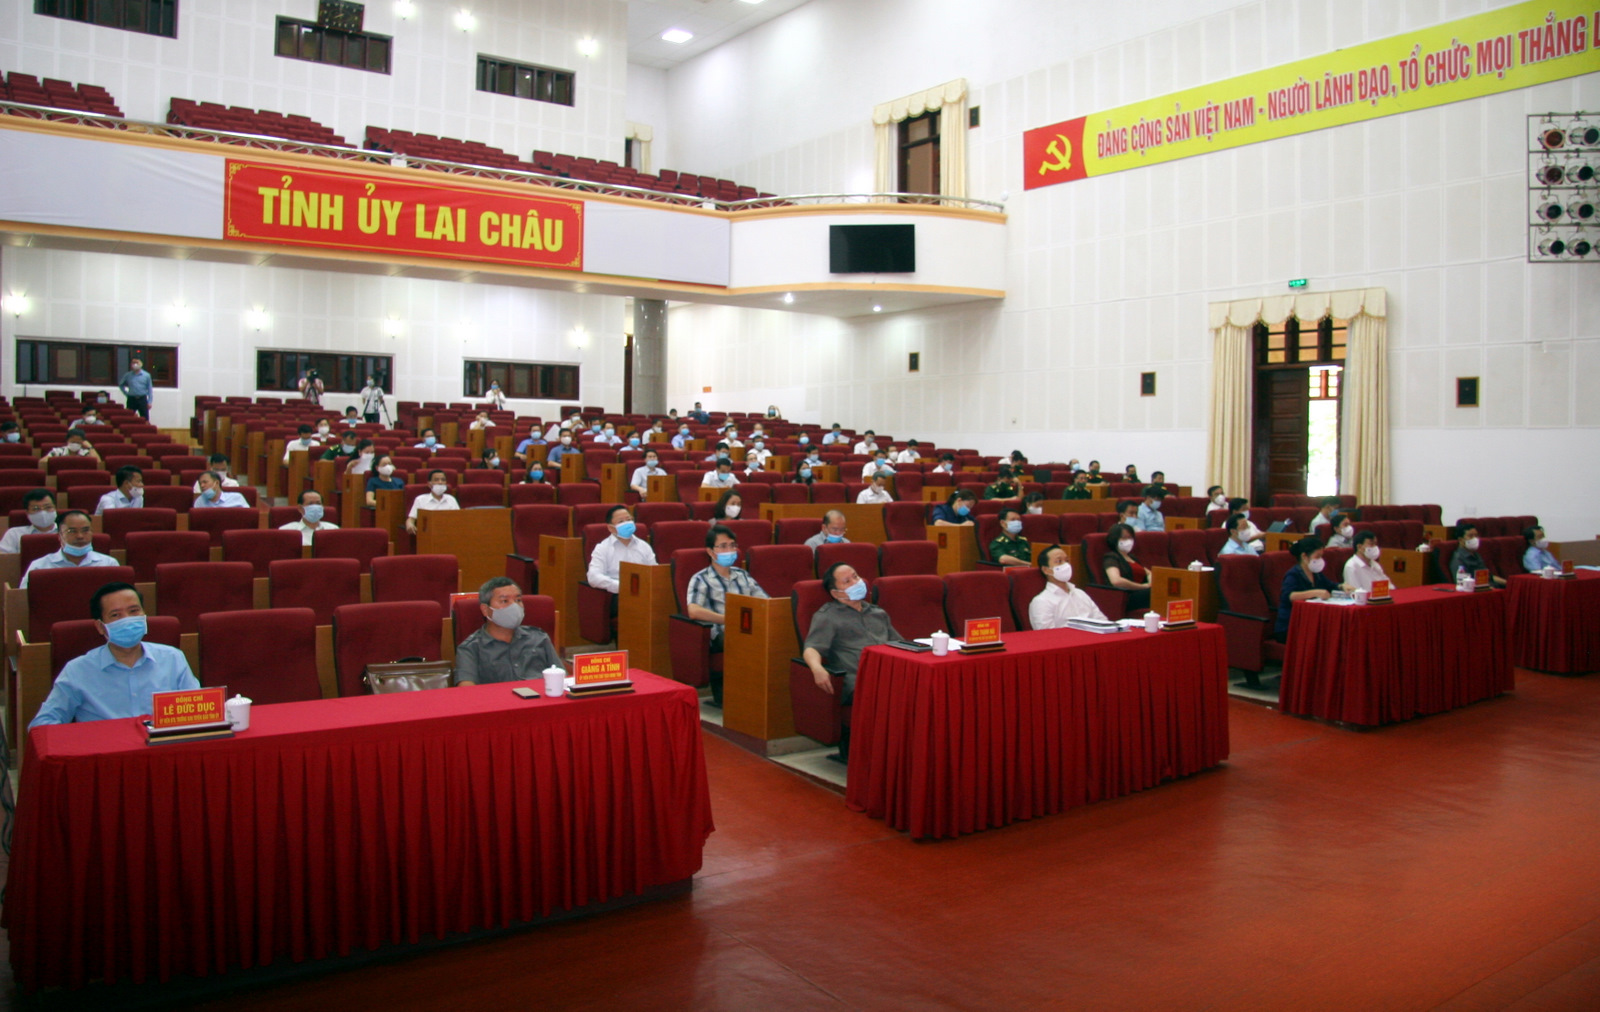 Quang cảnh hội nghị tại điểm cầu tỉnh Lai Châu.